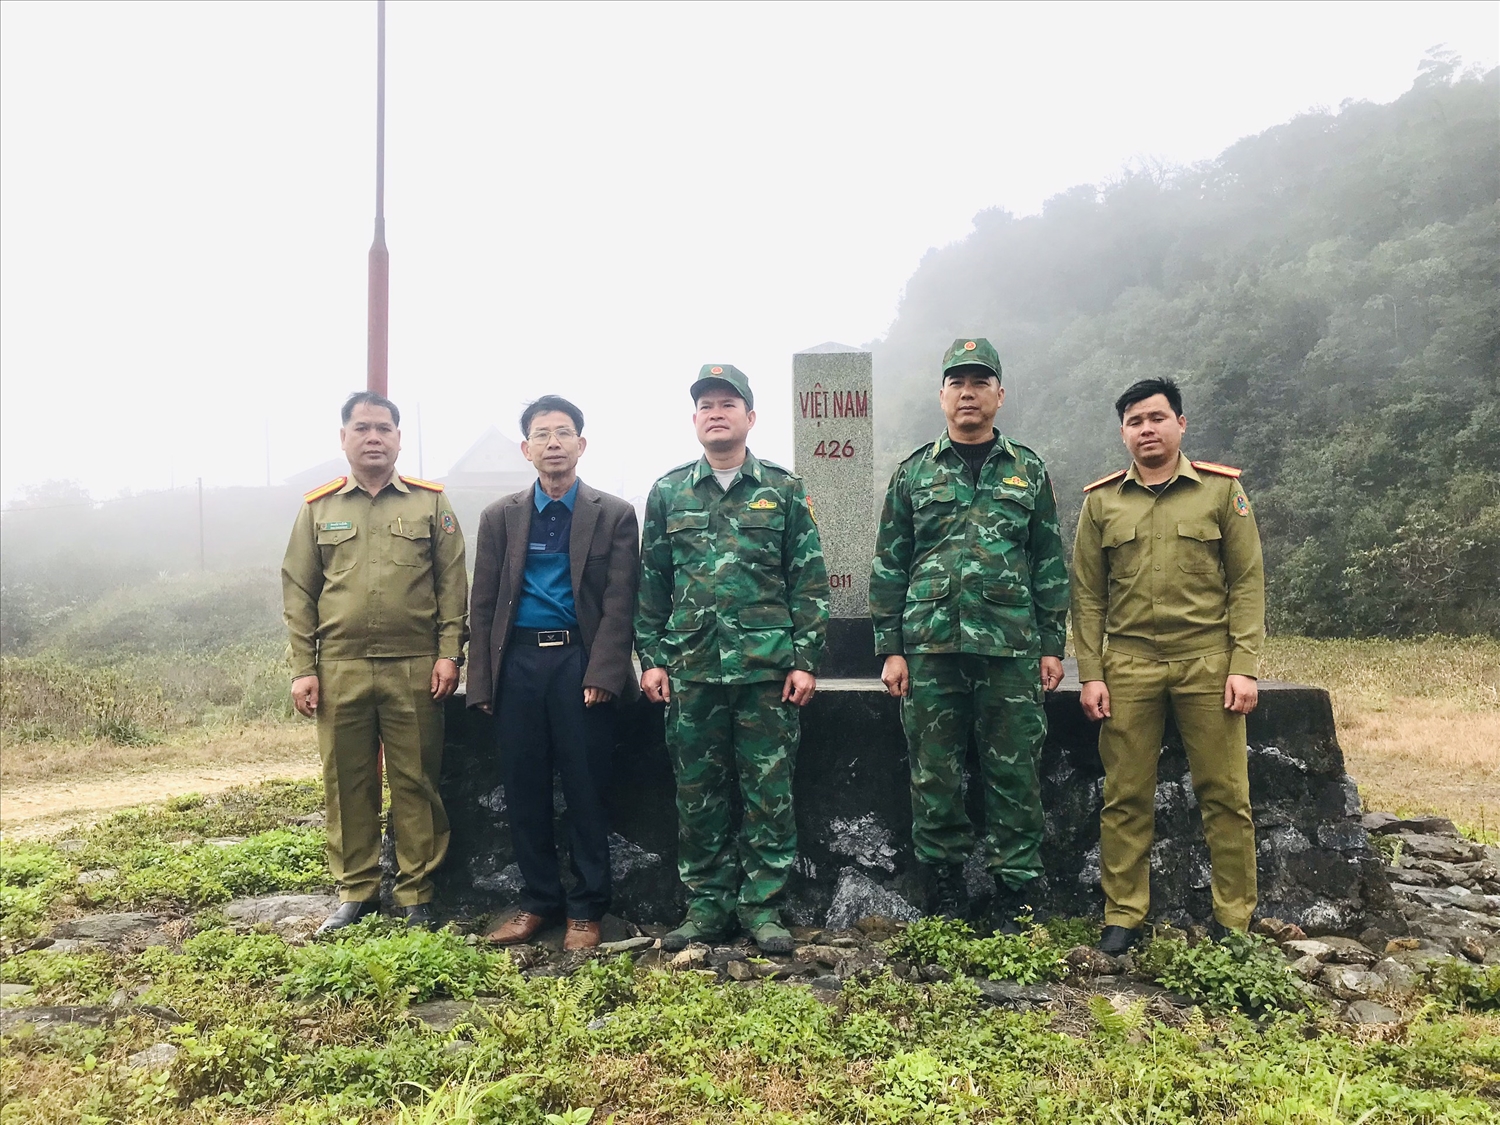 Tác giả thăm cán bộ, chiến sĩ Trạm kiểm soát Cửa khẩu Tam Hợp và Công an cửa khẩu Thoong Mi Xay (Lào) - ảnh chụp tại cột mốc số 426.